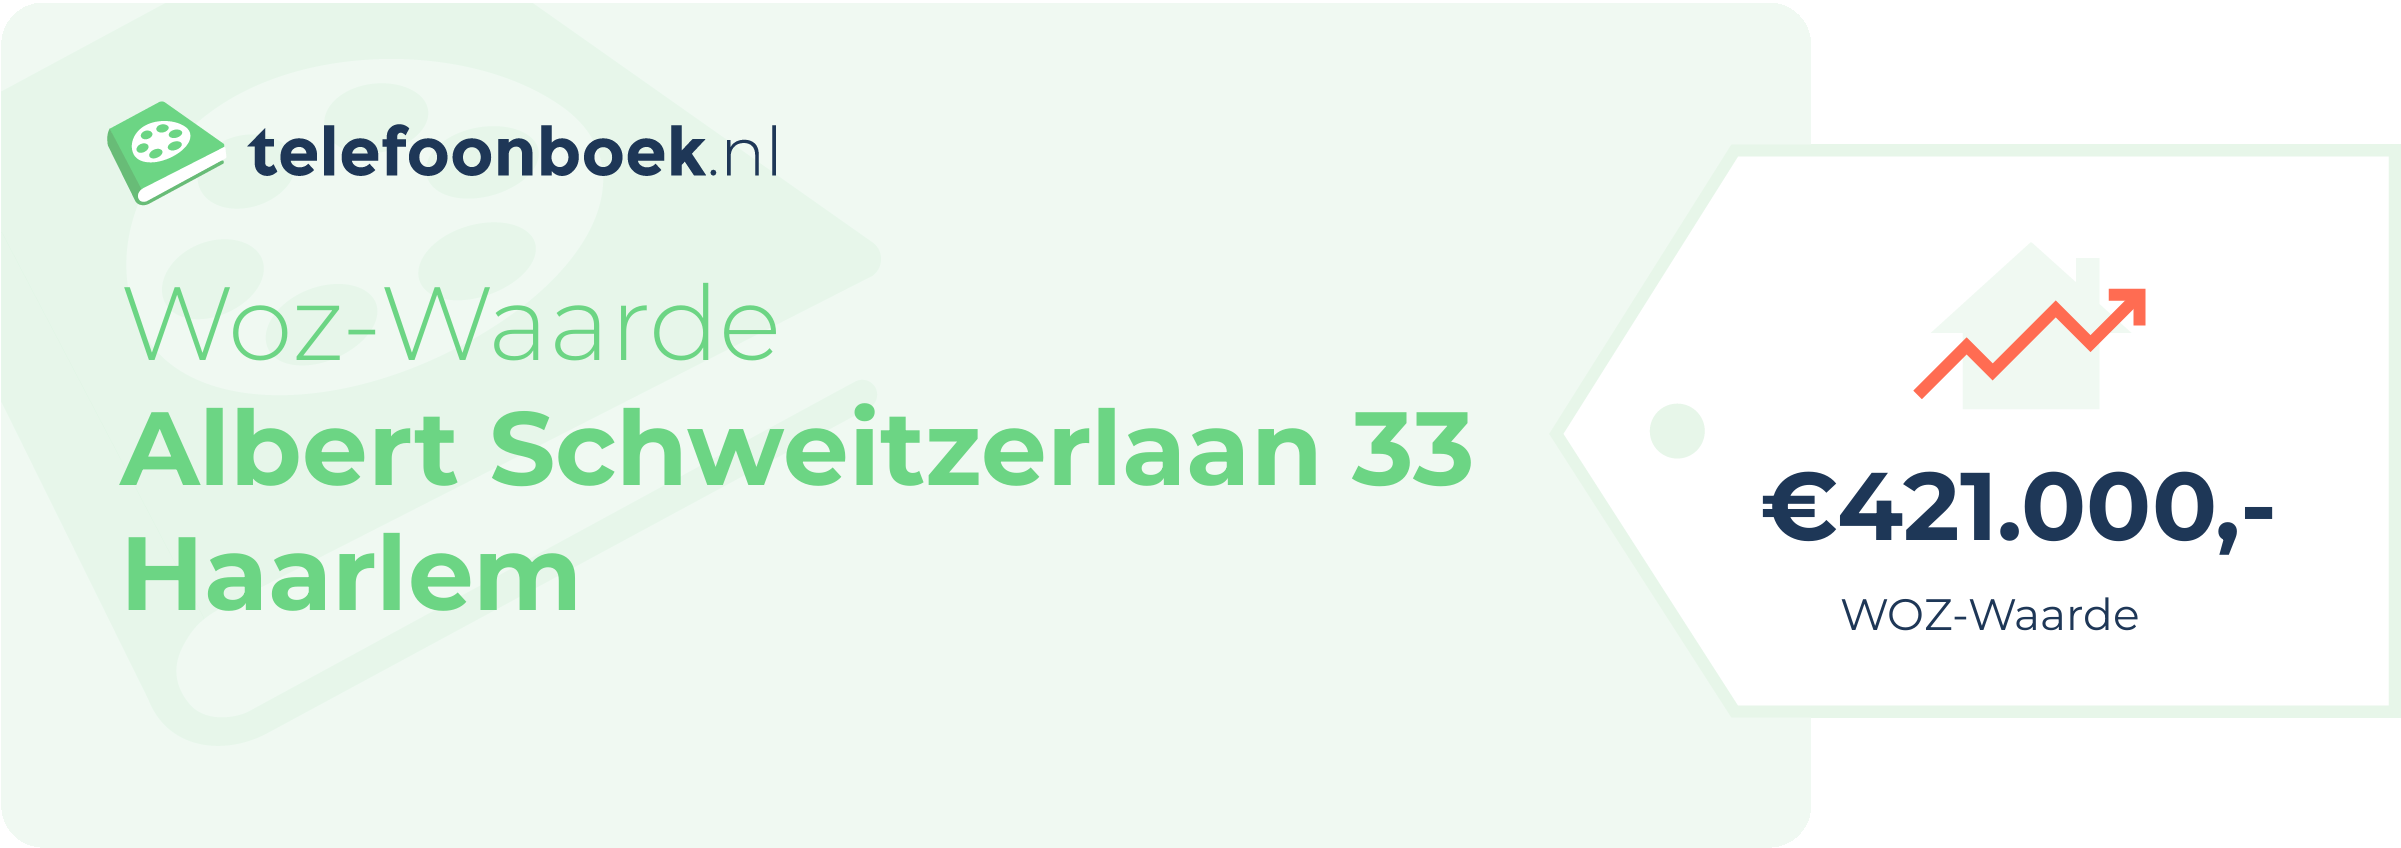 WOZ-waarde Albert Schweitzerlaan 33 Haarlem